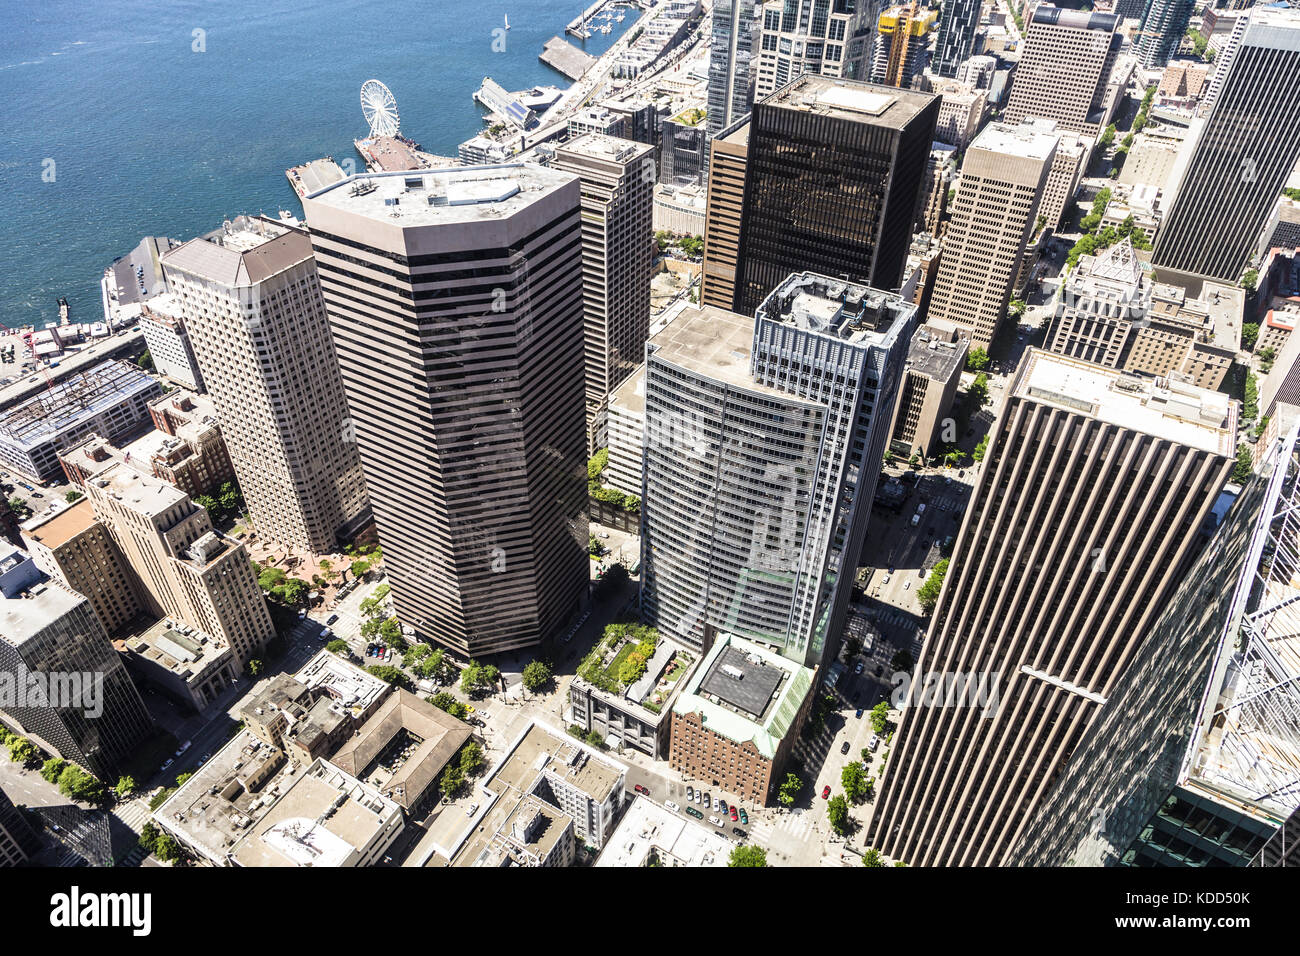 Vista aerea di Seattle il quartiere degli affari e finanziario nello stato di Washington più grande città del nord-ovest degli Stati Uniti. Foto Stock